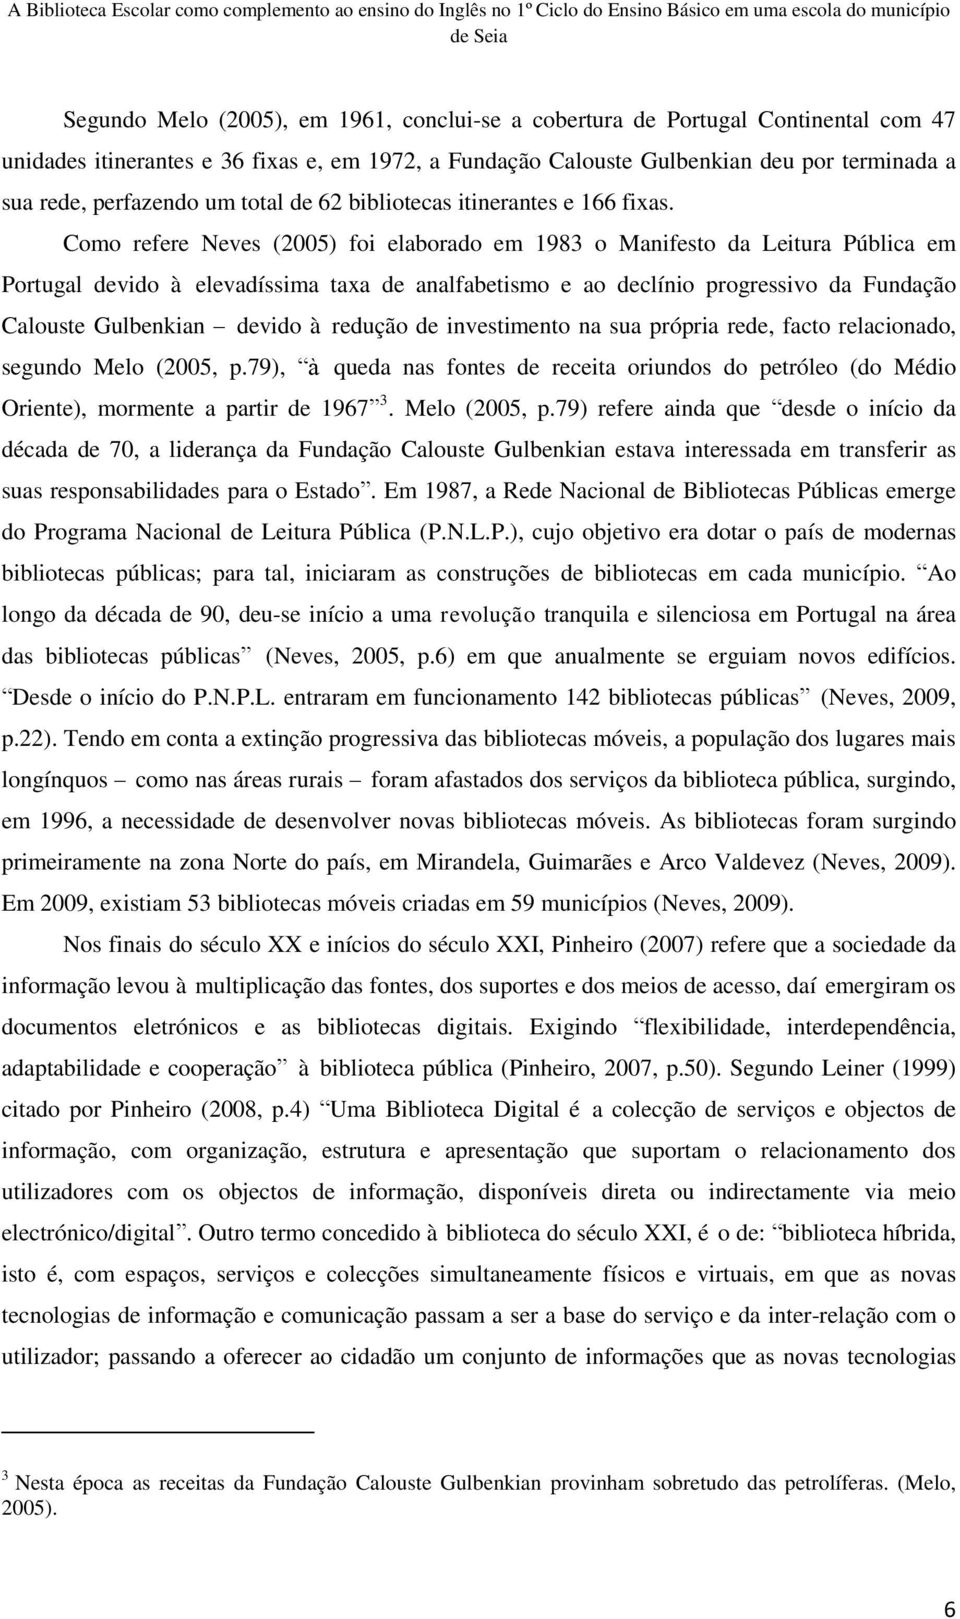 Como refere Neves (2005) foi elaborado em 1983 o Manifesto da Leitura Pública em Portugal devido à elevadíssima taxa de analfabetismo e ao declínio progressivo da Fundação Calouste Gulbenkian devido